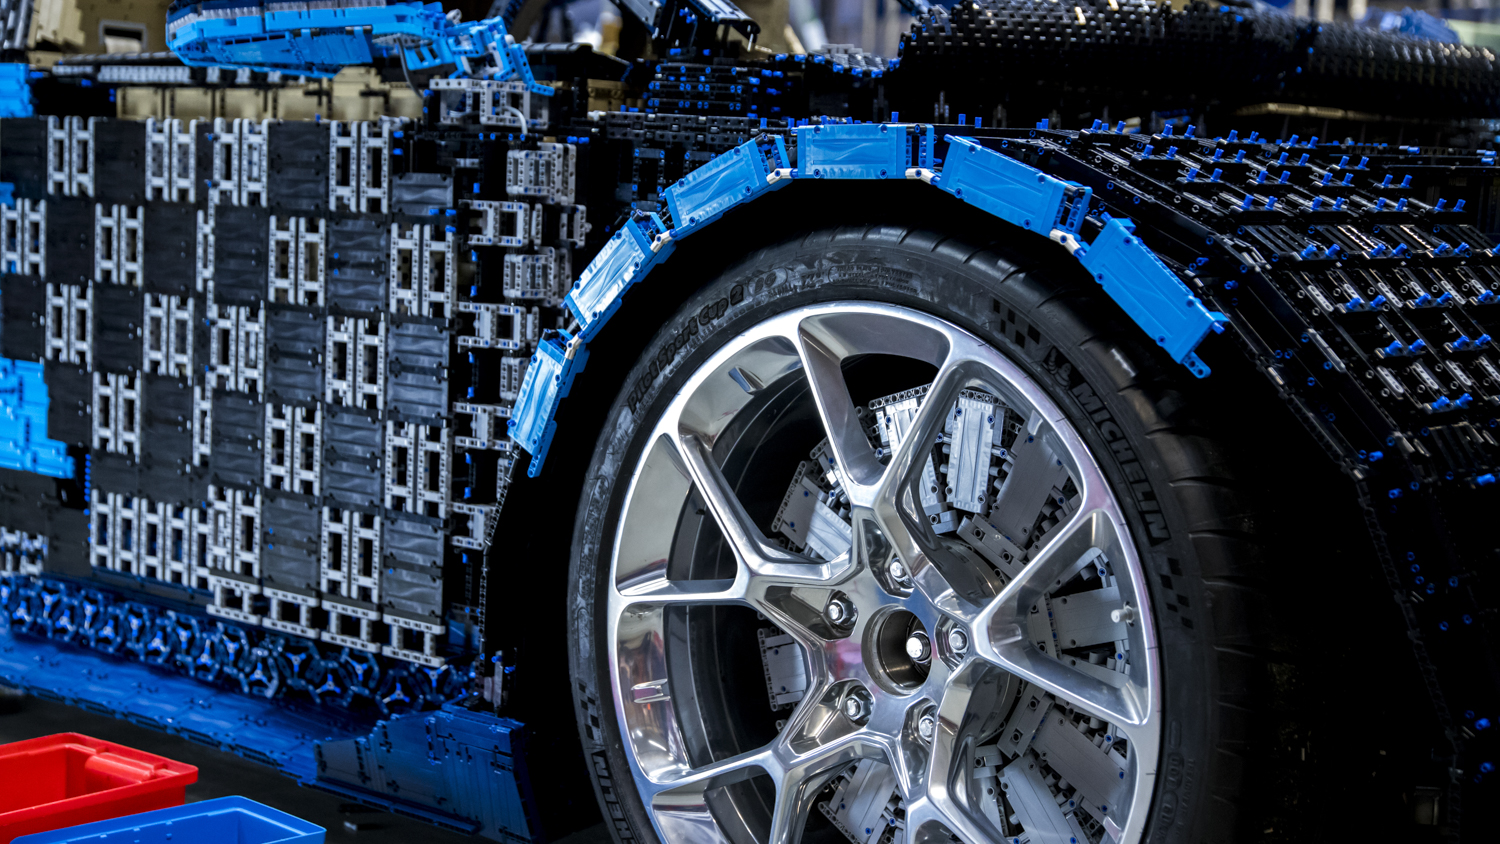 LEGO Bugatti